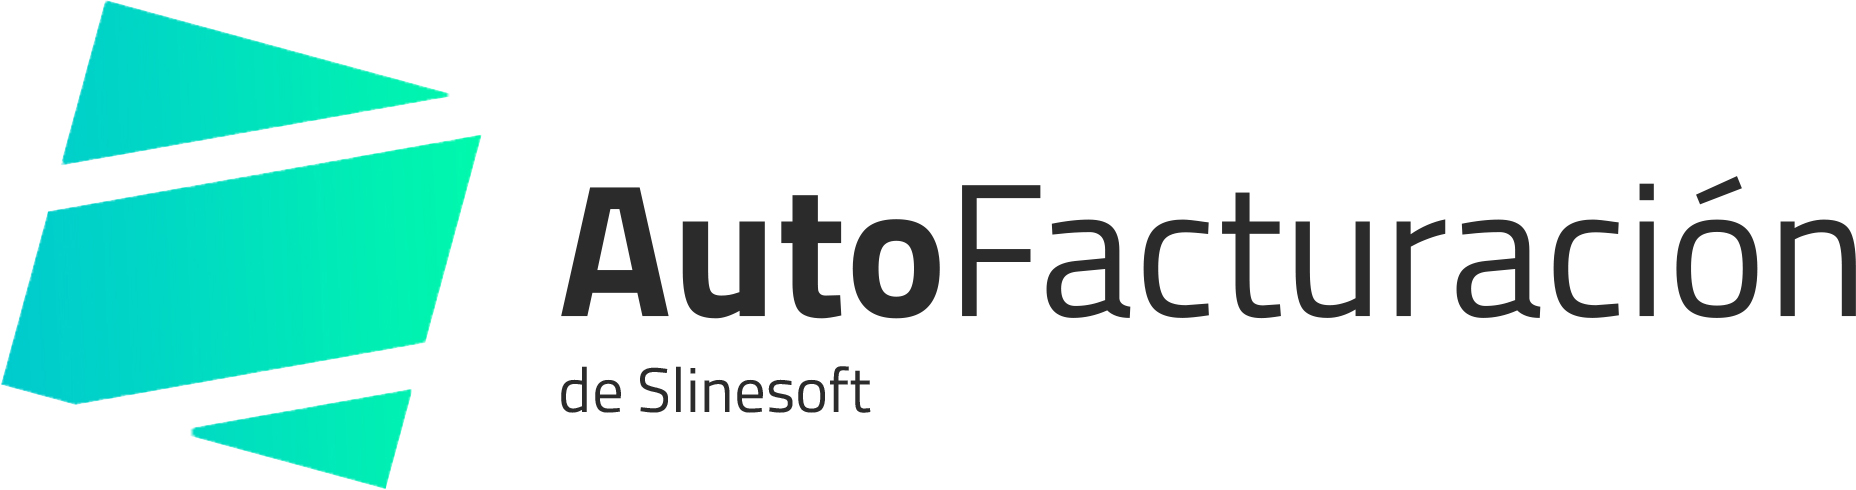 Portal de Auto Factura